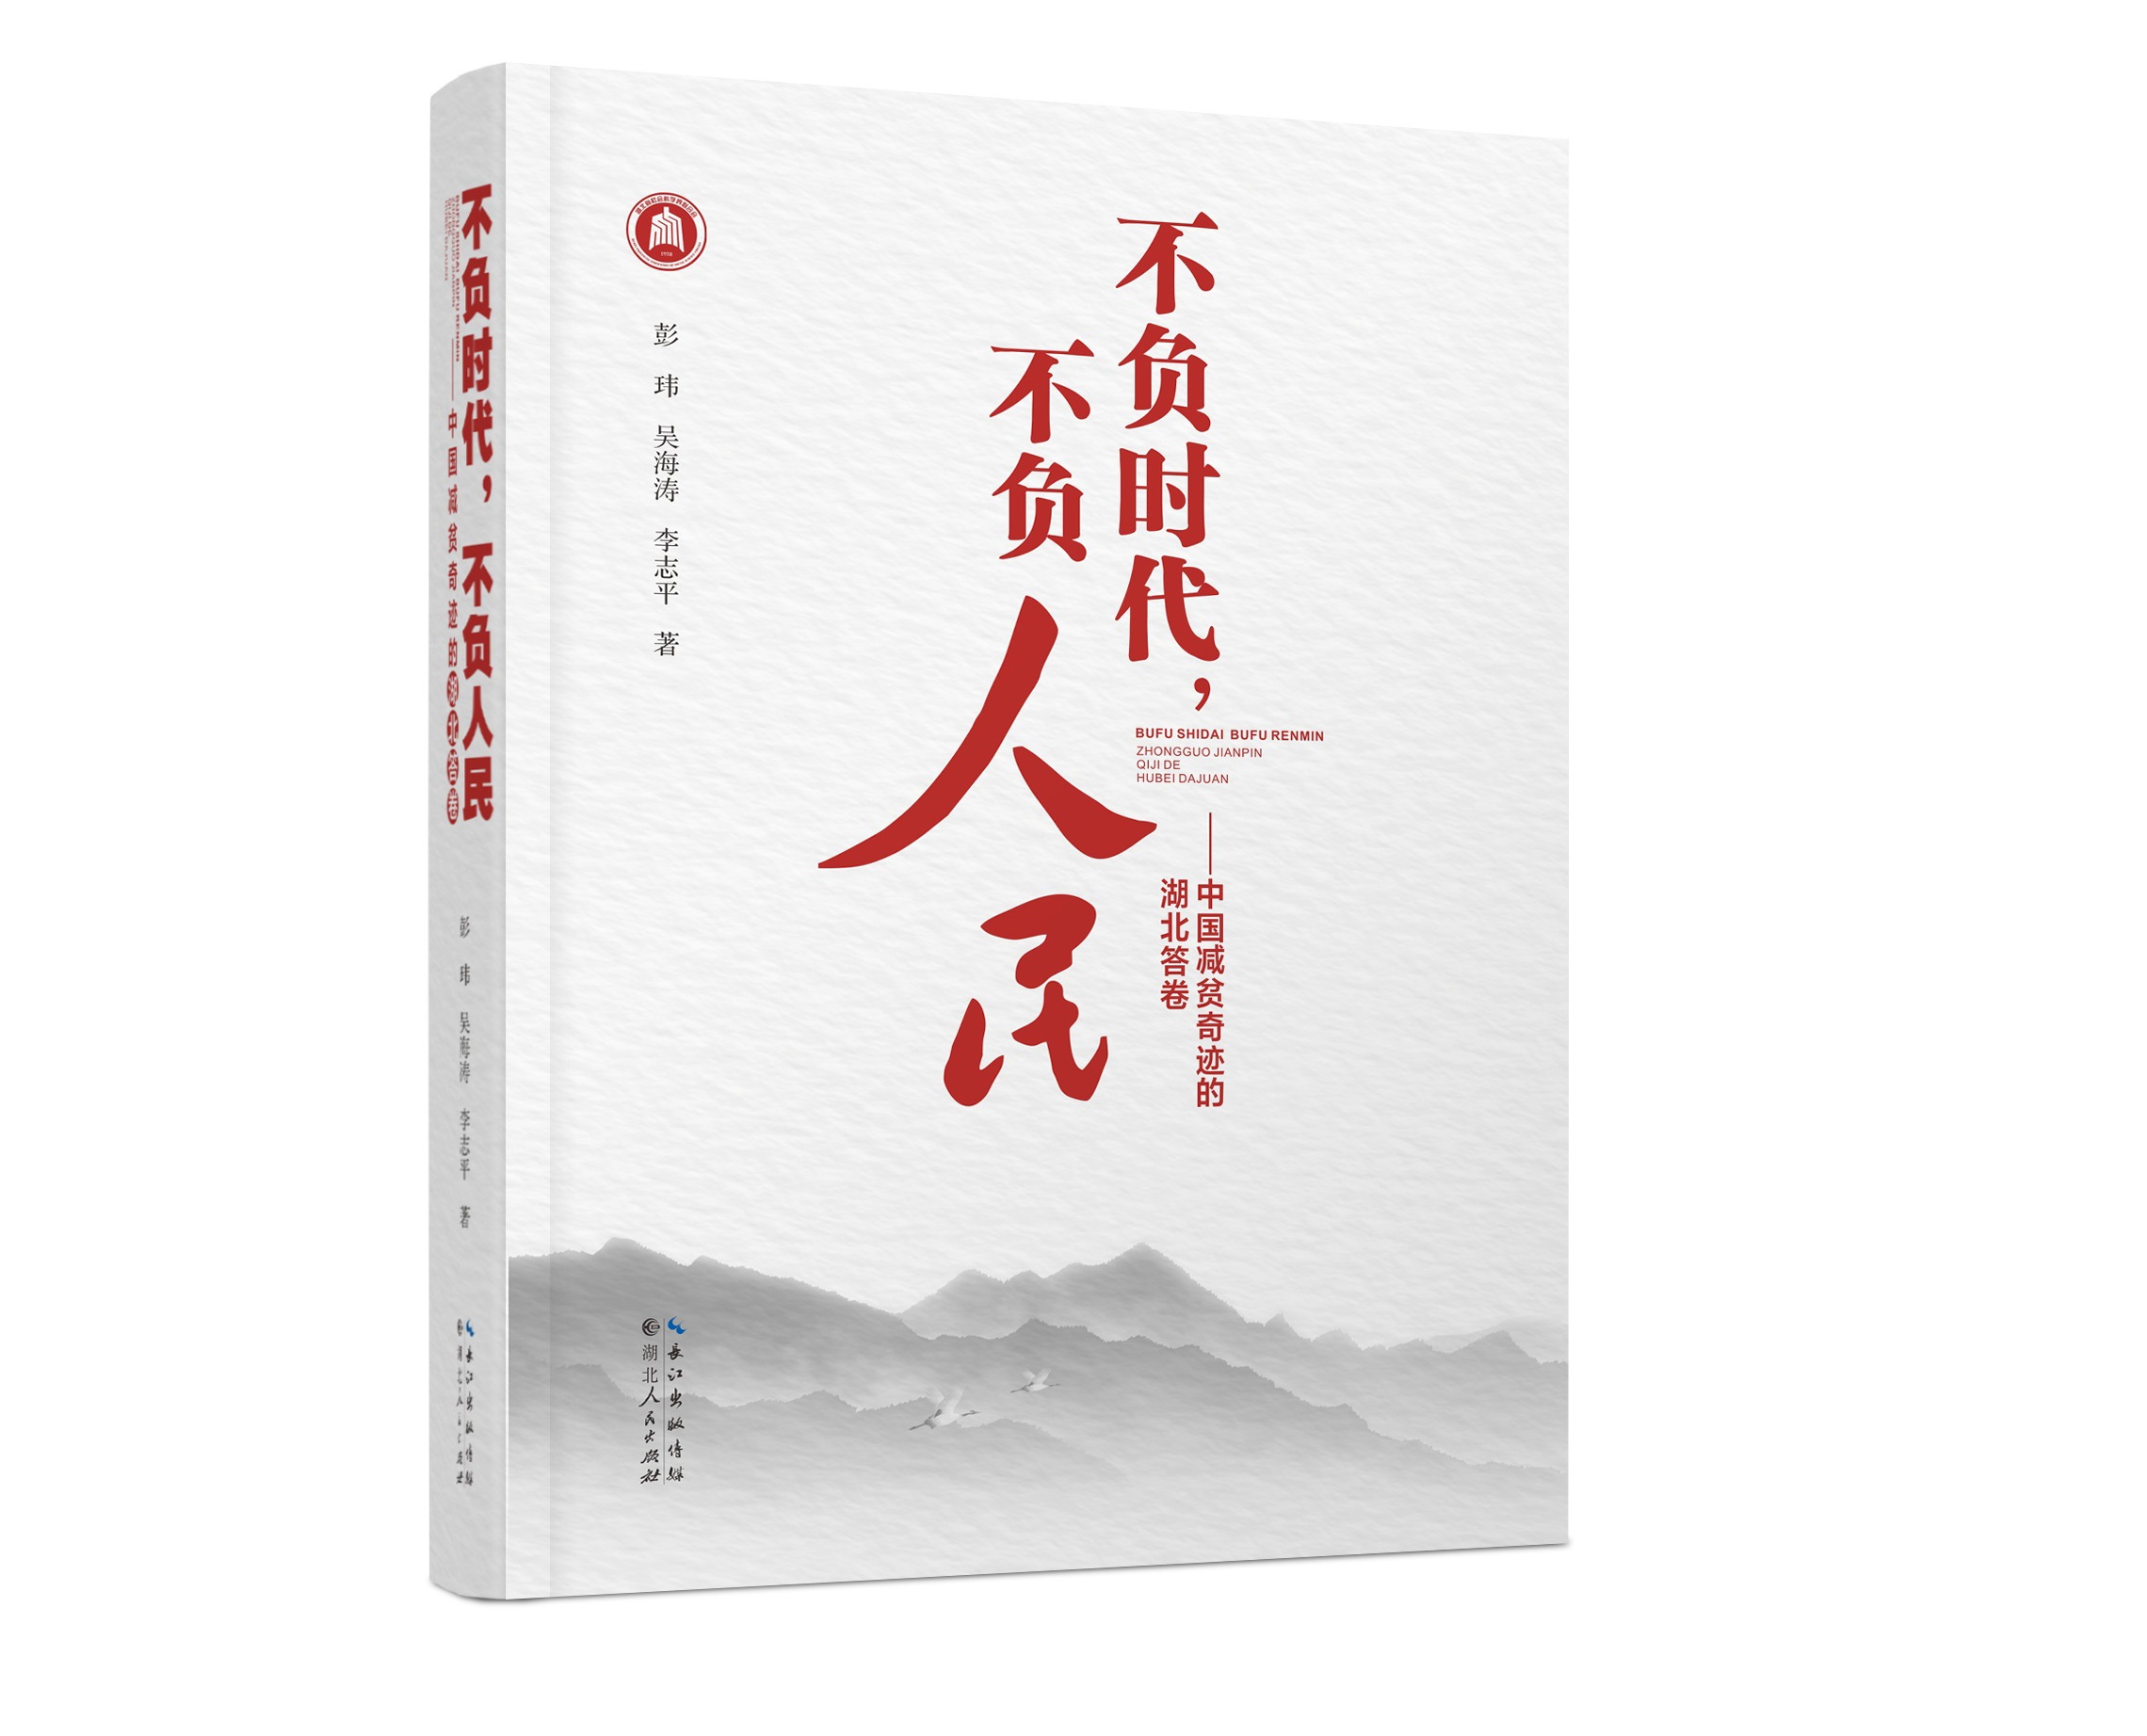 《不负时代 不负人民——中国减贫奇迹的湖北答卷》新书发布会暨贫困治理与共同富裕研讨会顺利举办